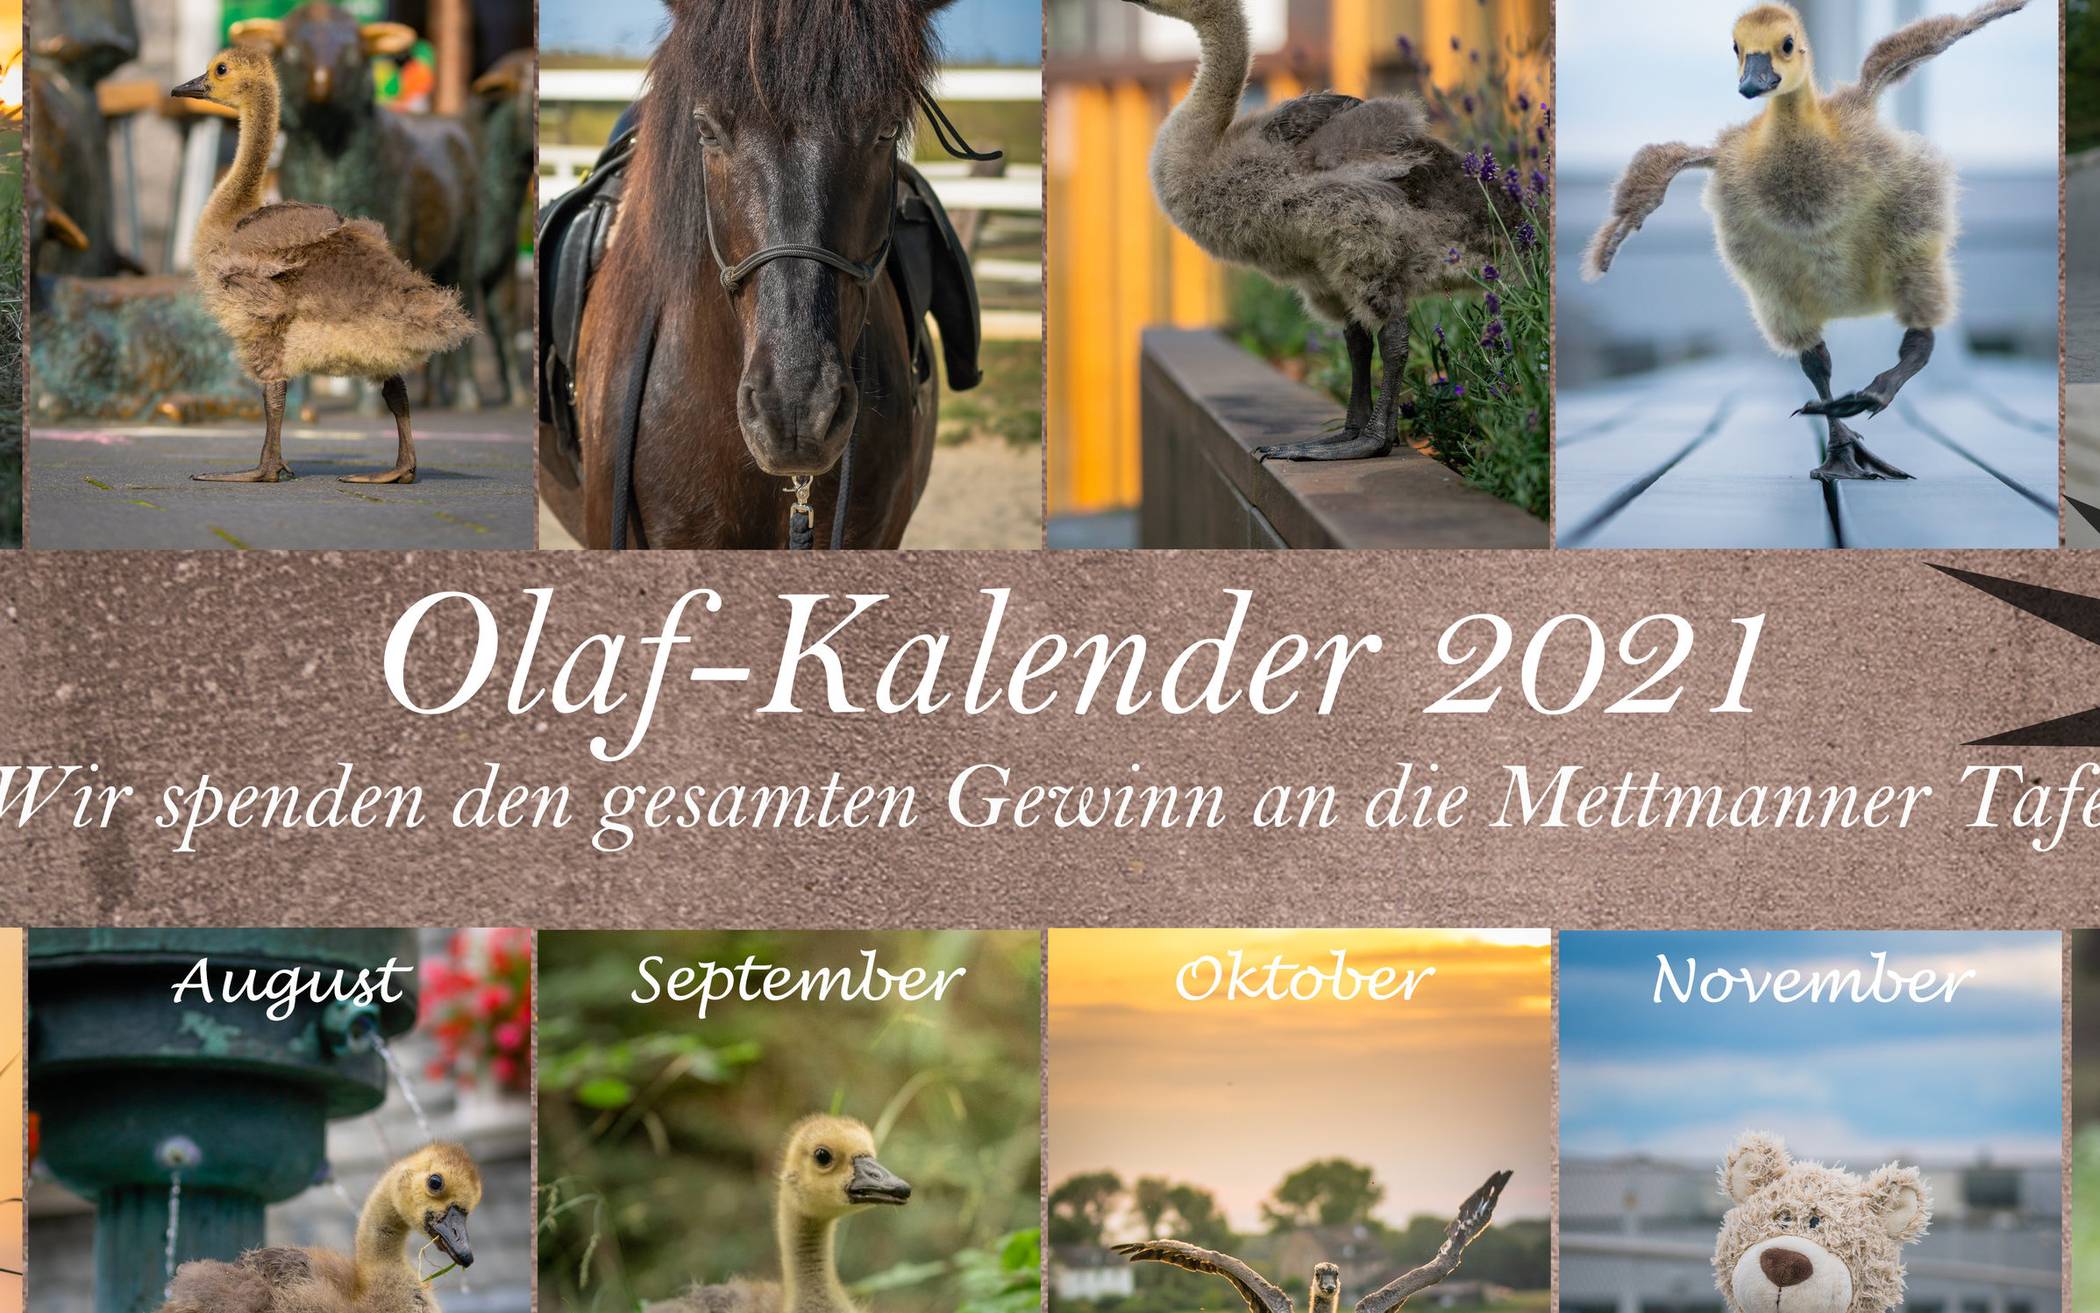  Ein possierlicher Begleiter durch das Jahr 2021: der Olaf-Kalender.   